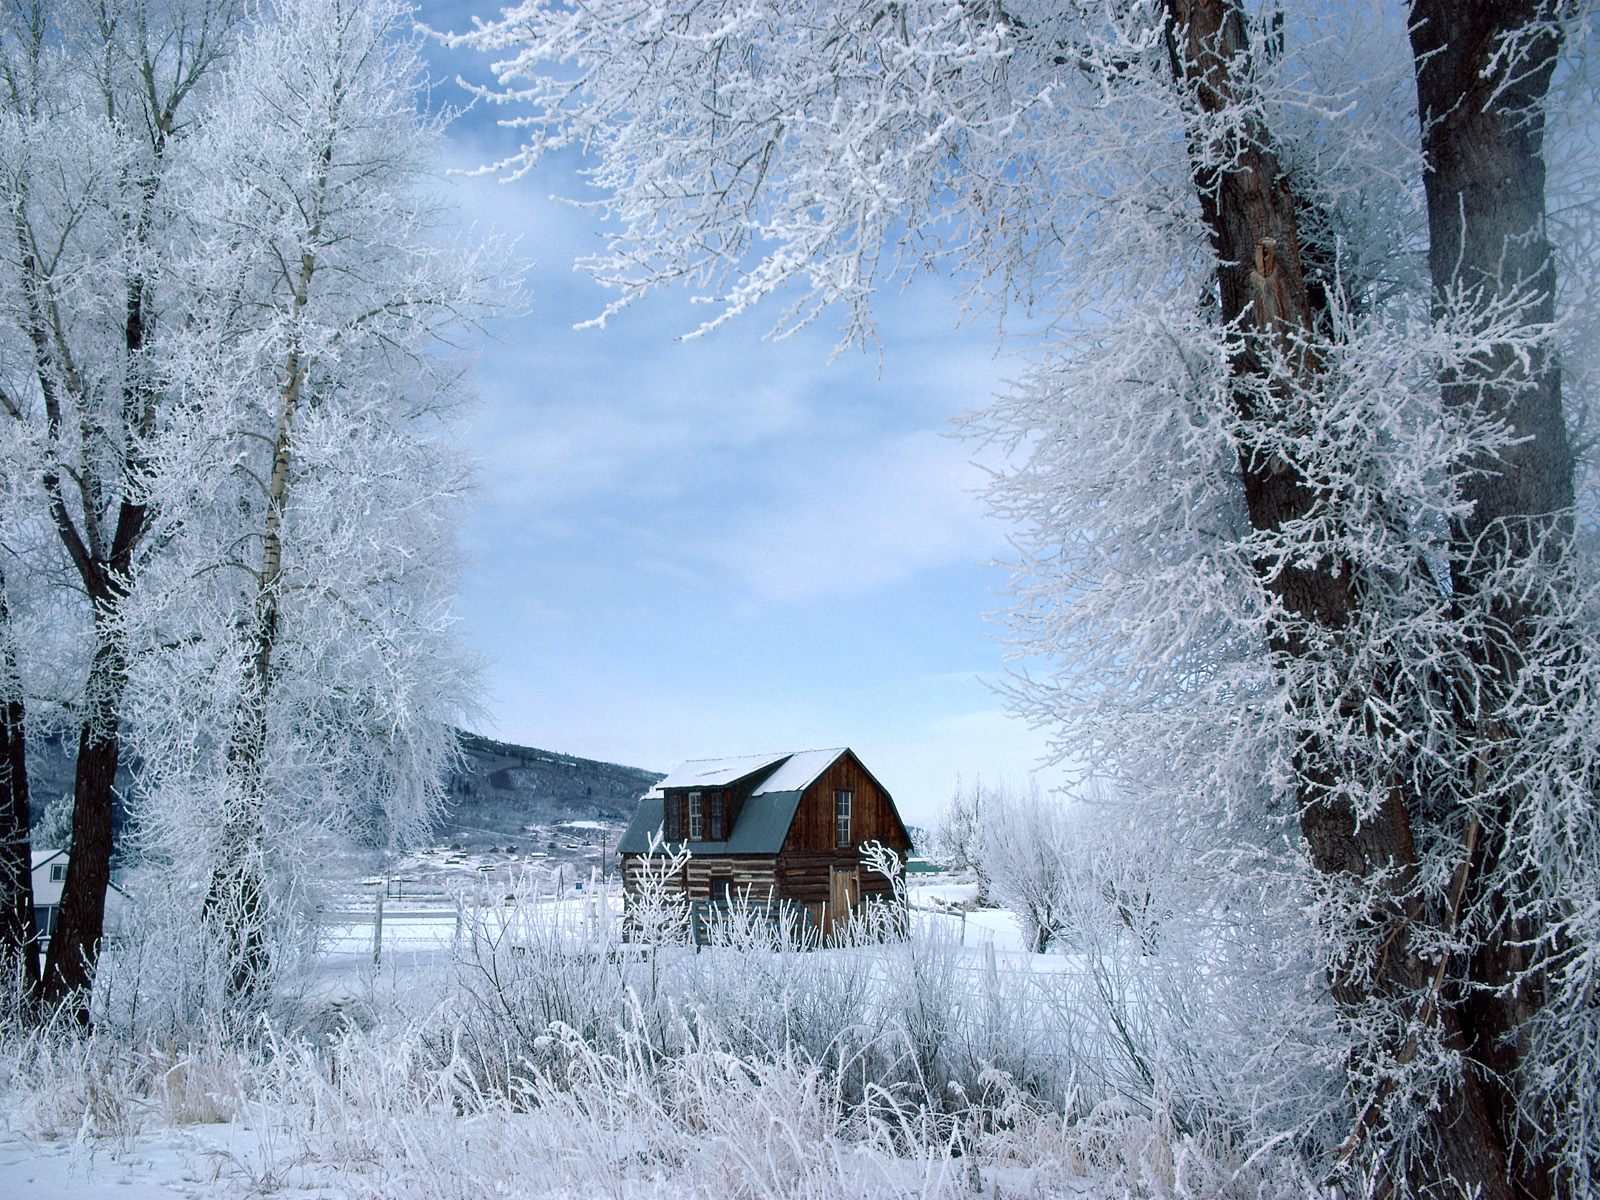 Скачать картинку Зима, Фотографии в телефон бесплатно.